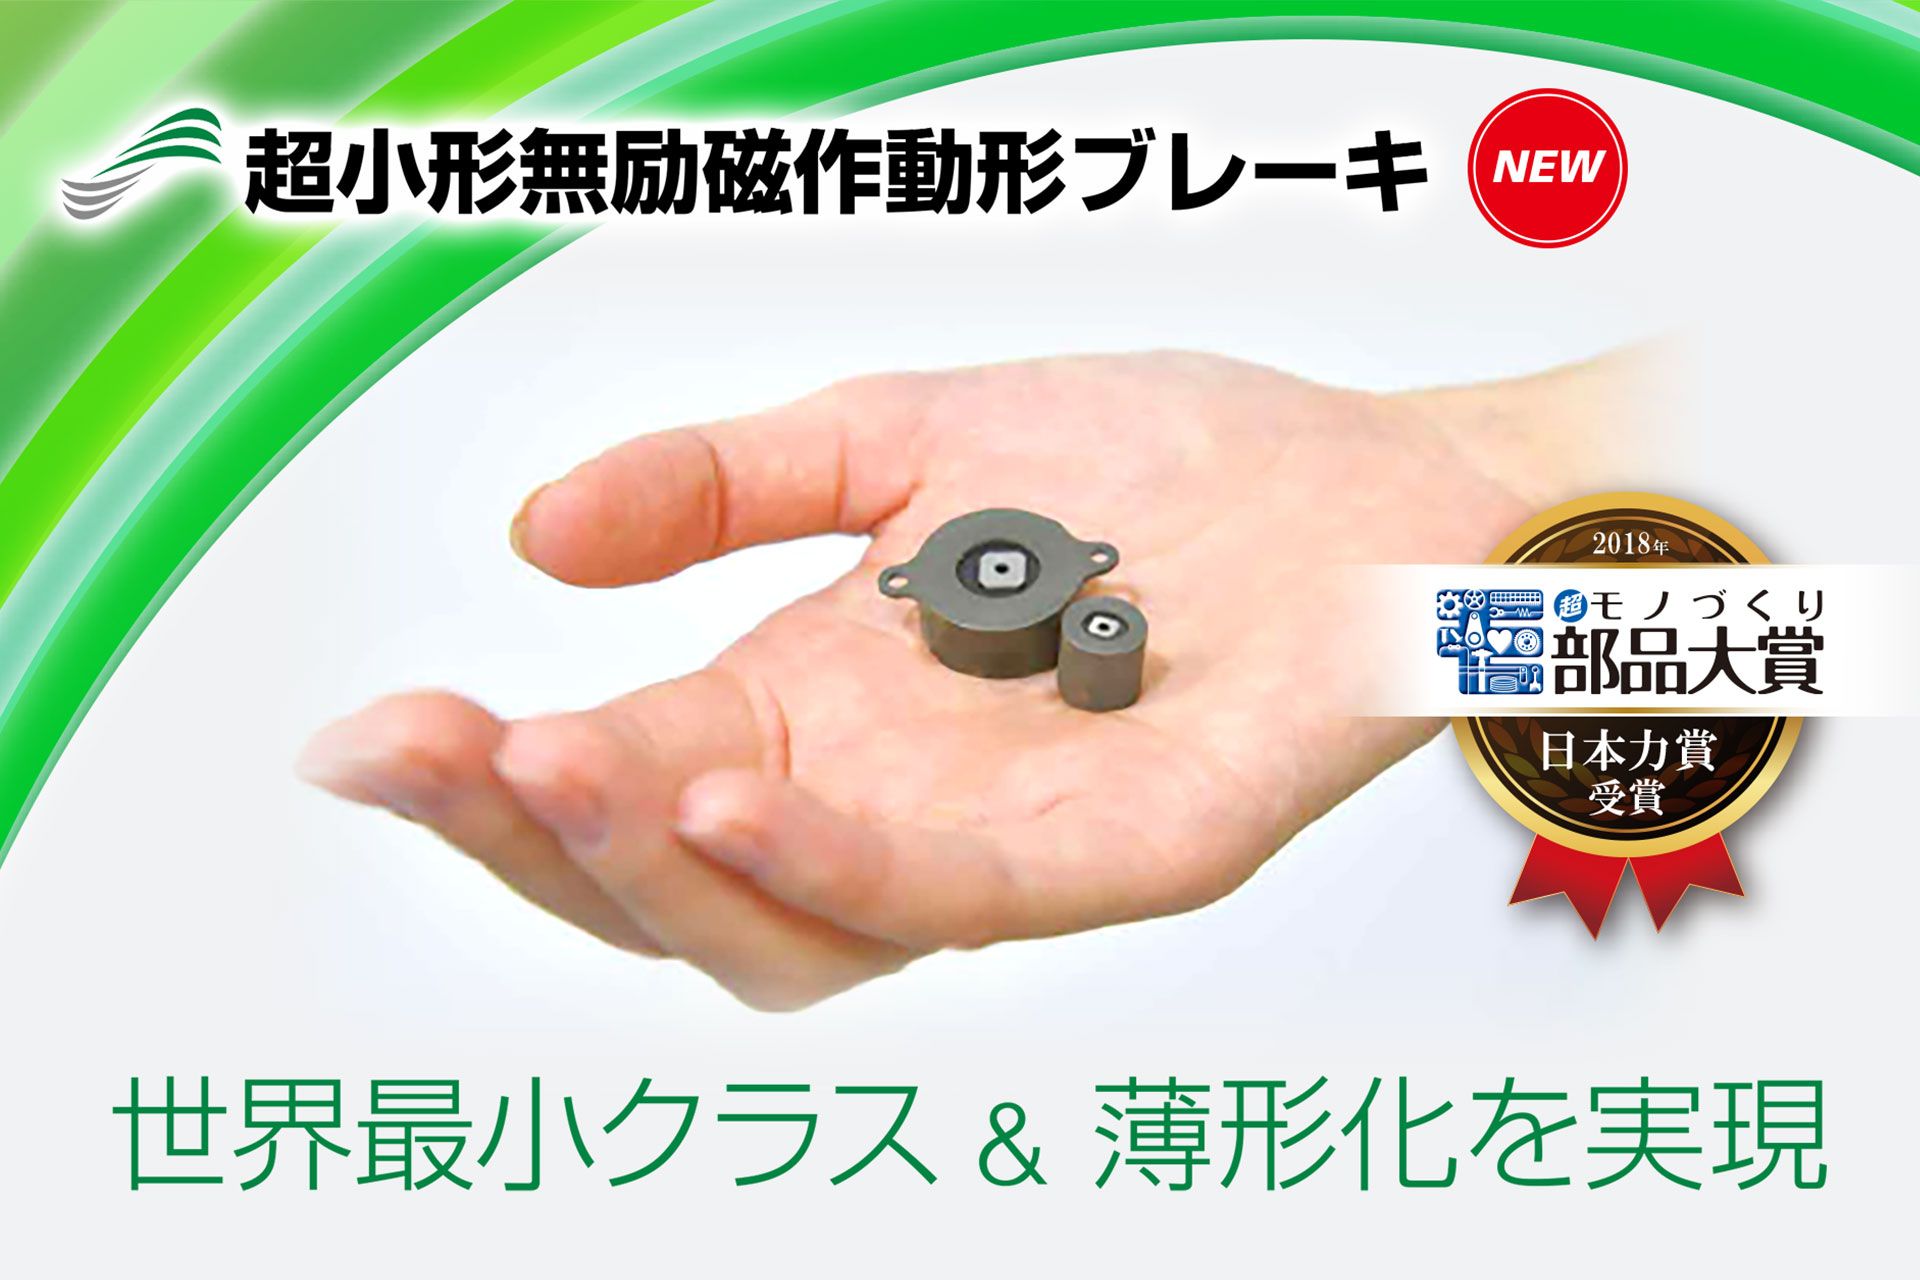 超小形無励磁作動形ブレーキ。世界最小クラス&薄形化を実現。2018年超モノづくり部品大賞　日本力賞受賞。